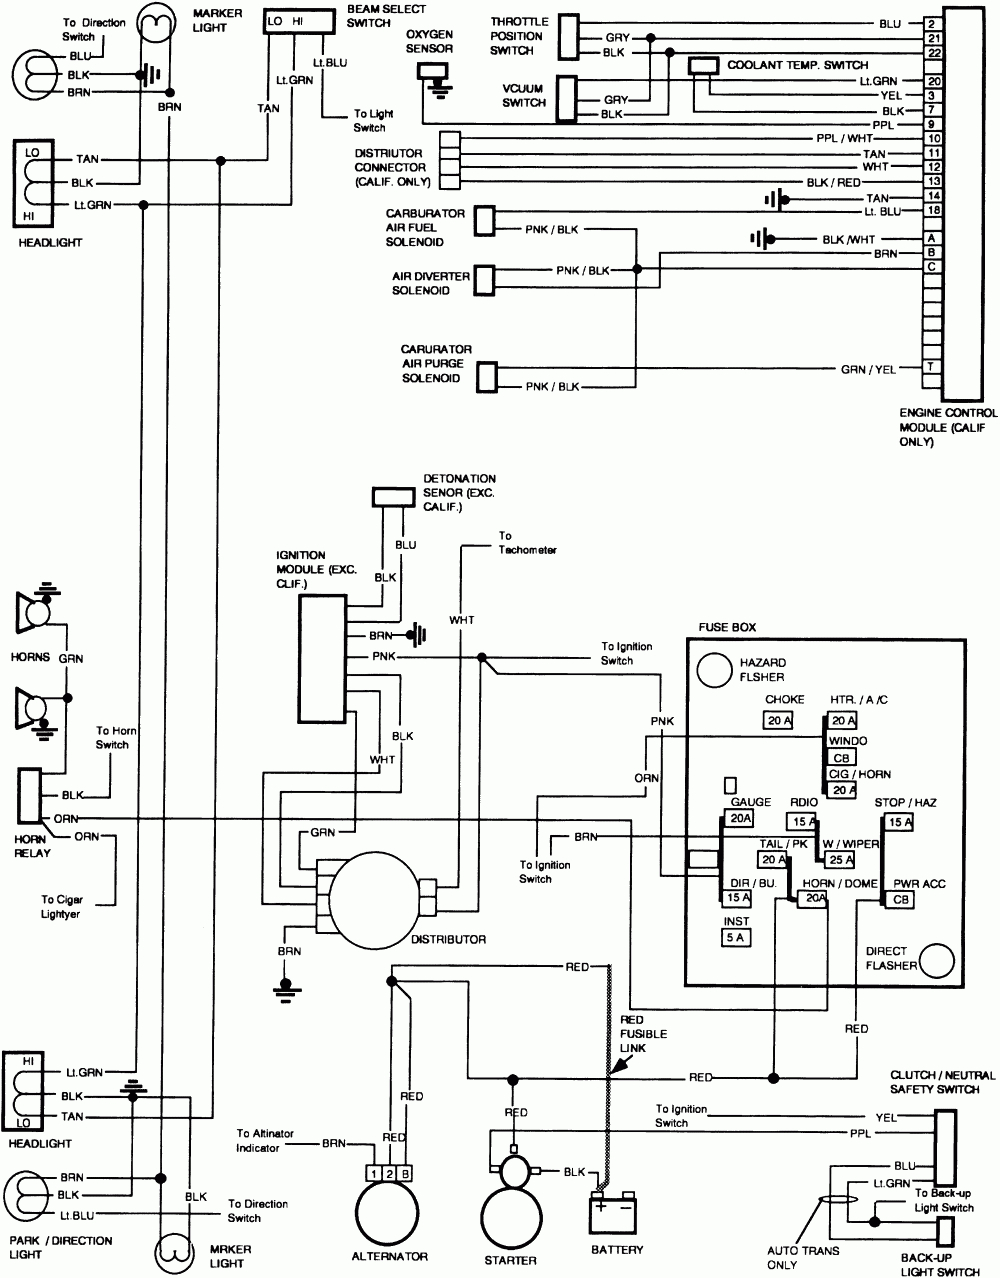 Free Wiring Diagram 1991 Gmc Sierra | Wiring Schematic For 83 K10 - 1979 Chevy Truck Wiring Diagram